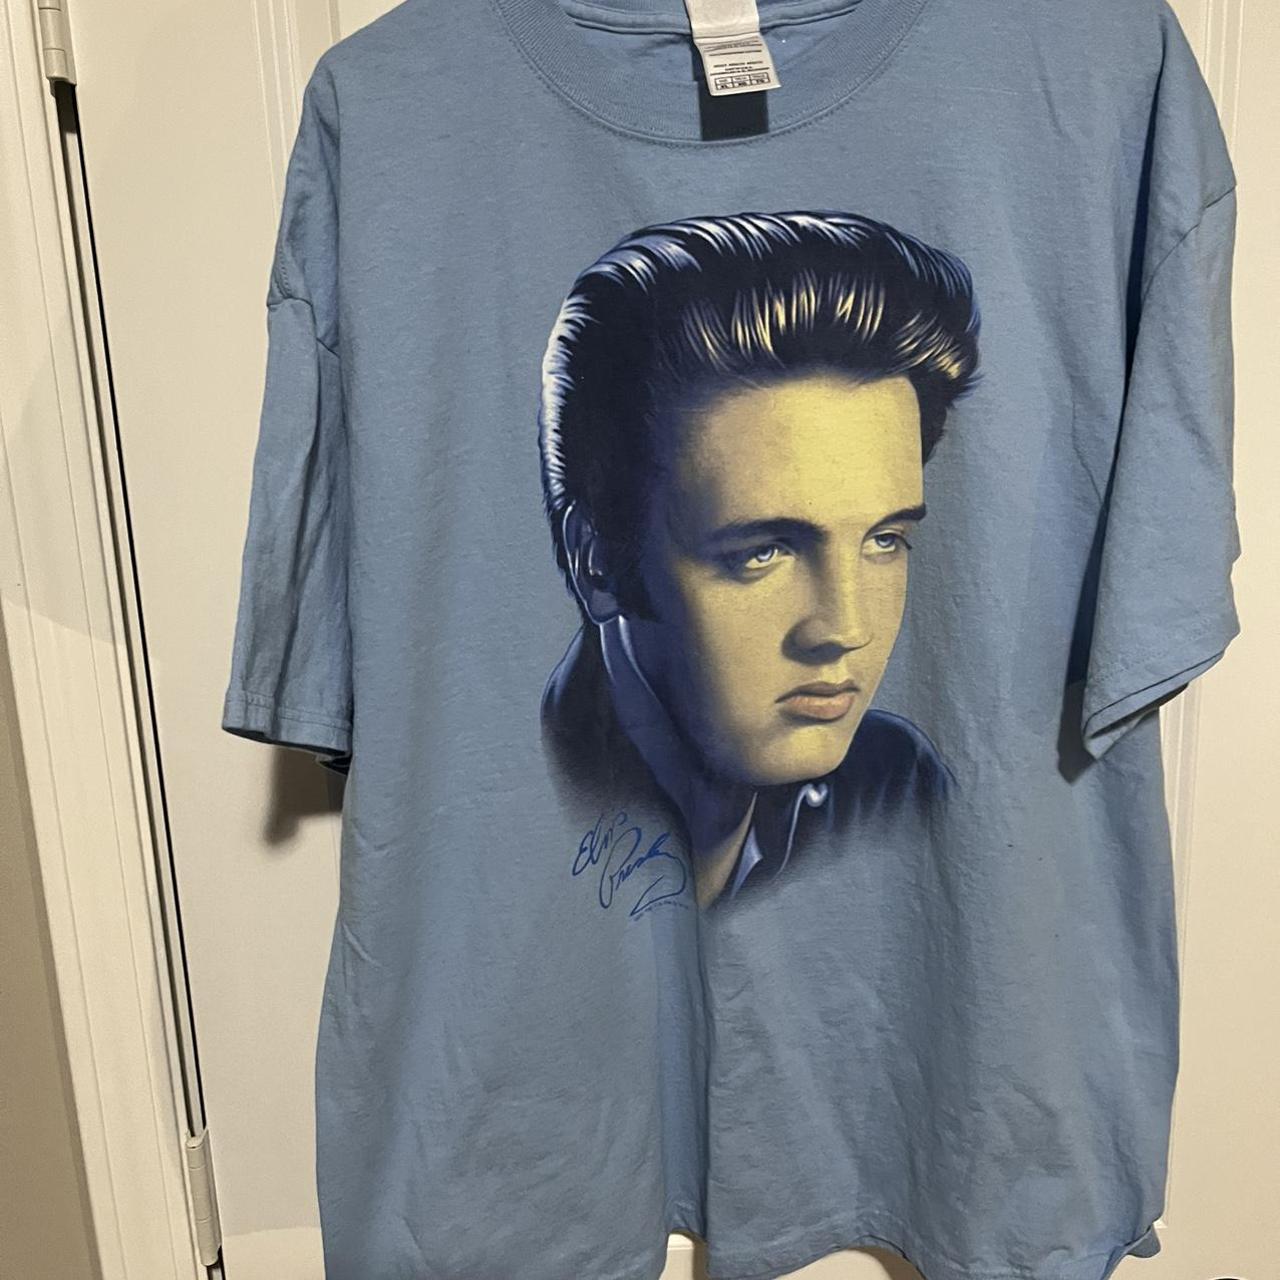 Vintage Elvis shirt - Depop